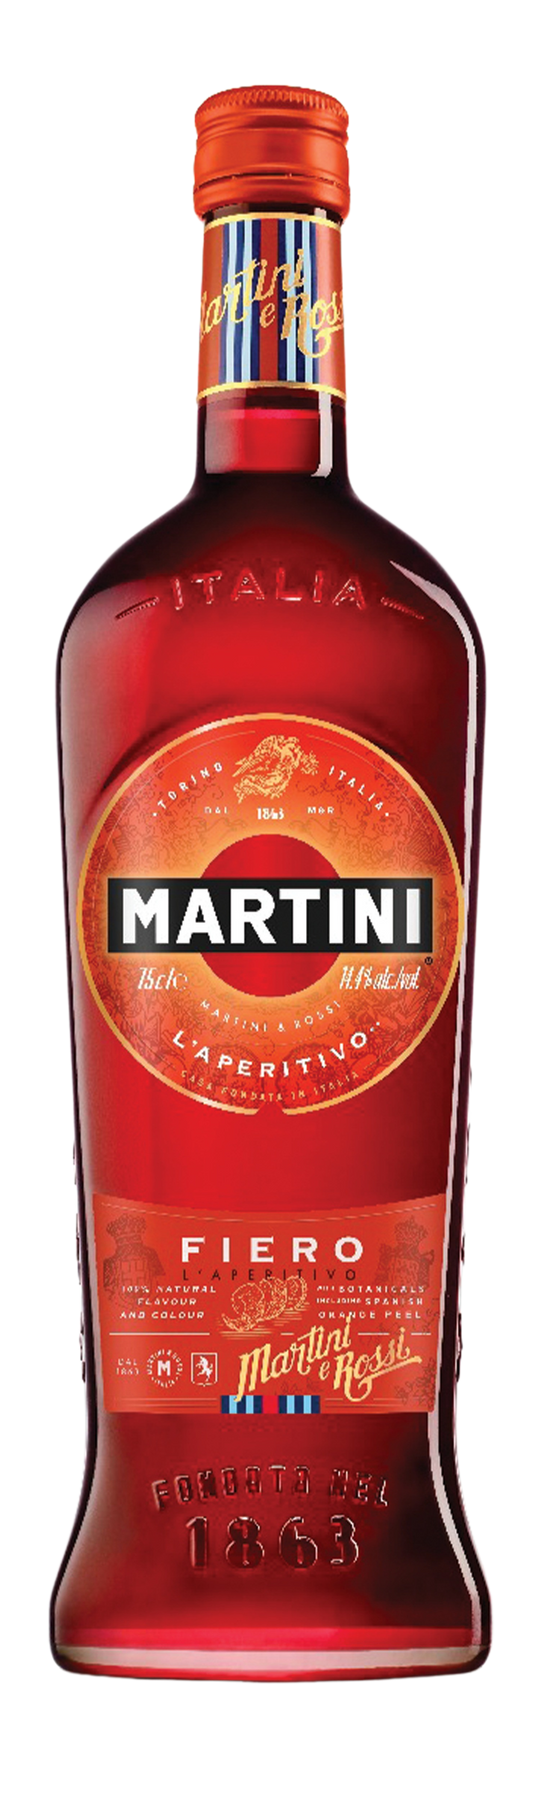 Martini Fiero 15% 150cl